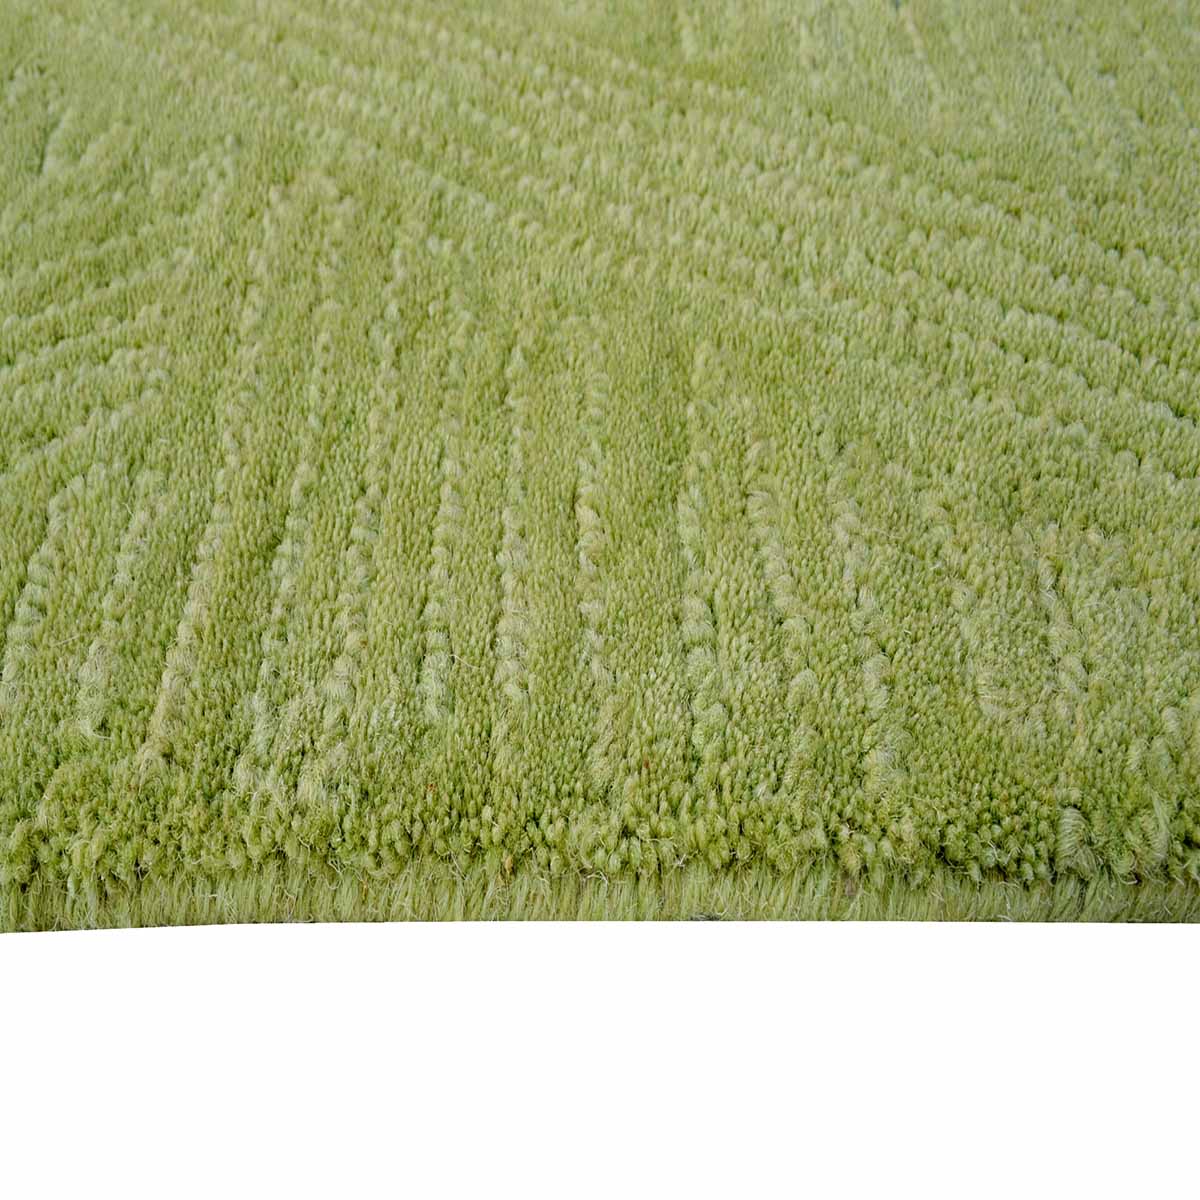 Beaumont Green Wool Rug | Modern Rugs Belrose | Rugs N Timber